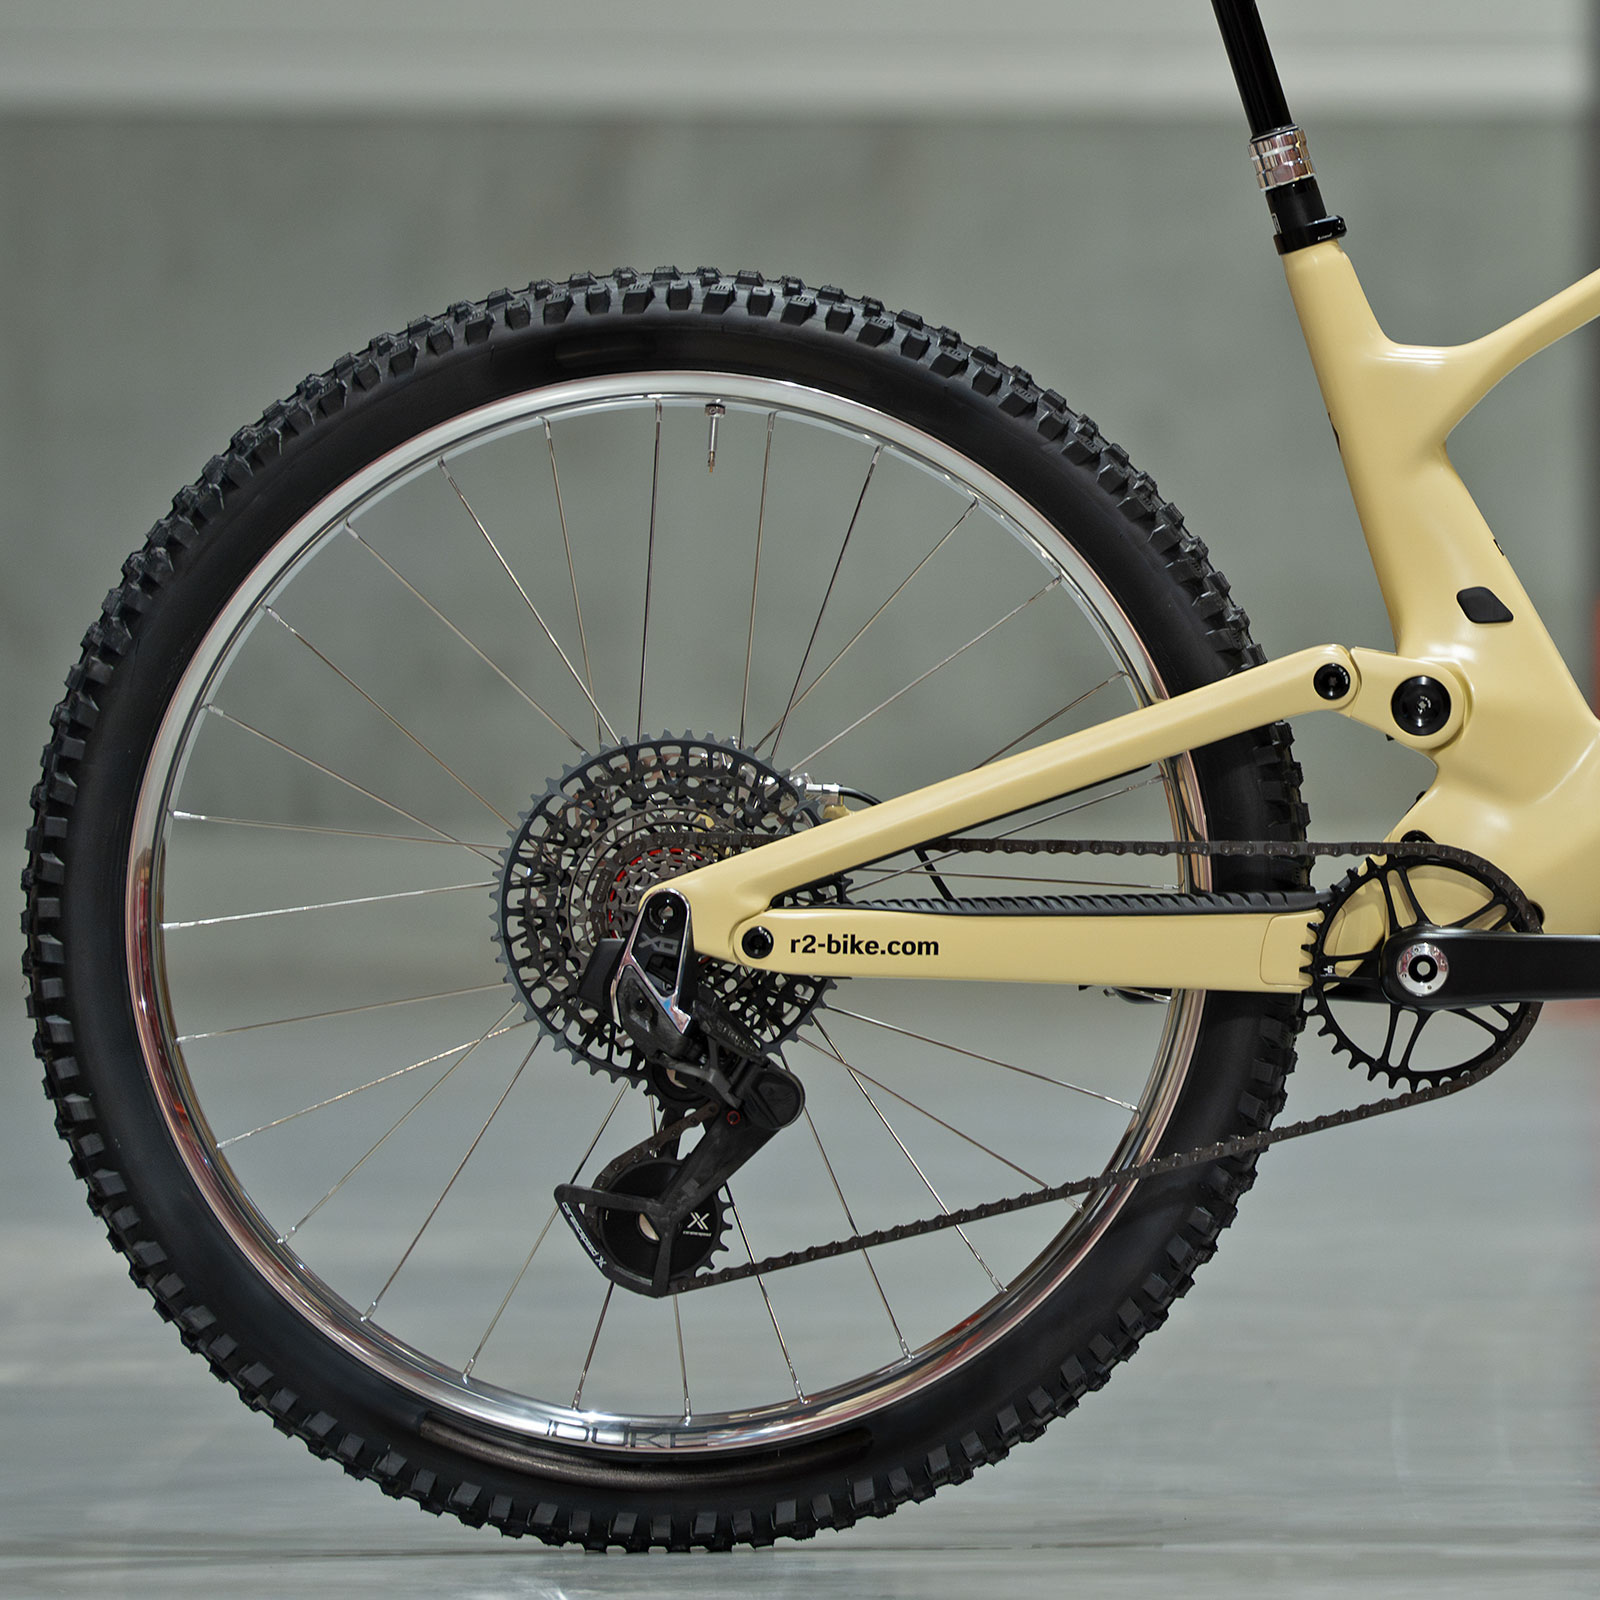 Dangerholm Scott Genius ST custom all-mountain bike of the future project, silver rear wheel